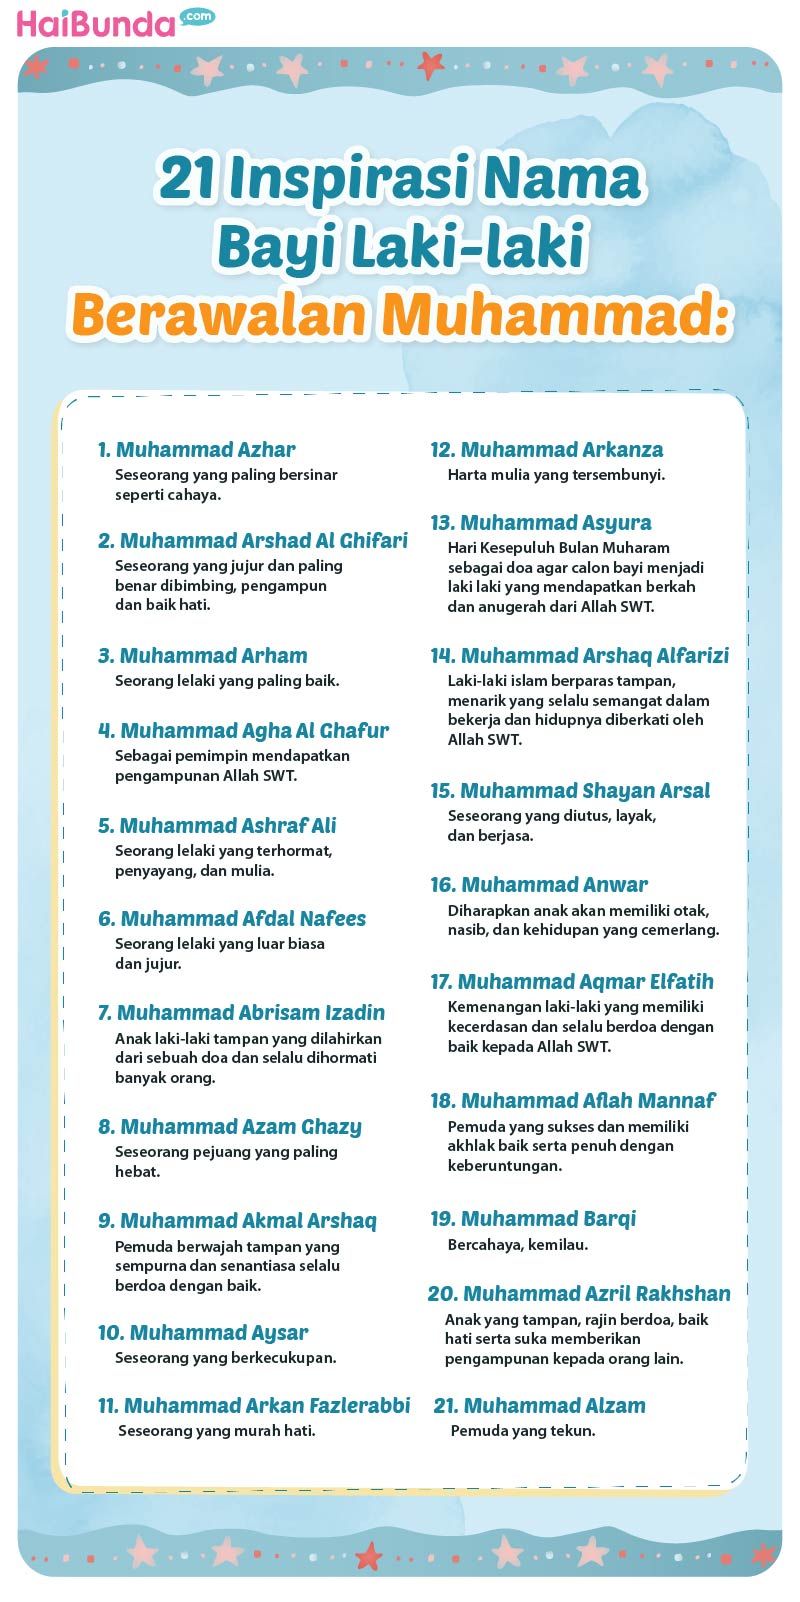 21 Inspirasi Nama Bayi Laki-laki
Berawalan Muhammad